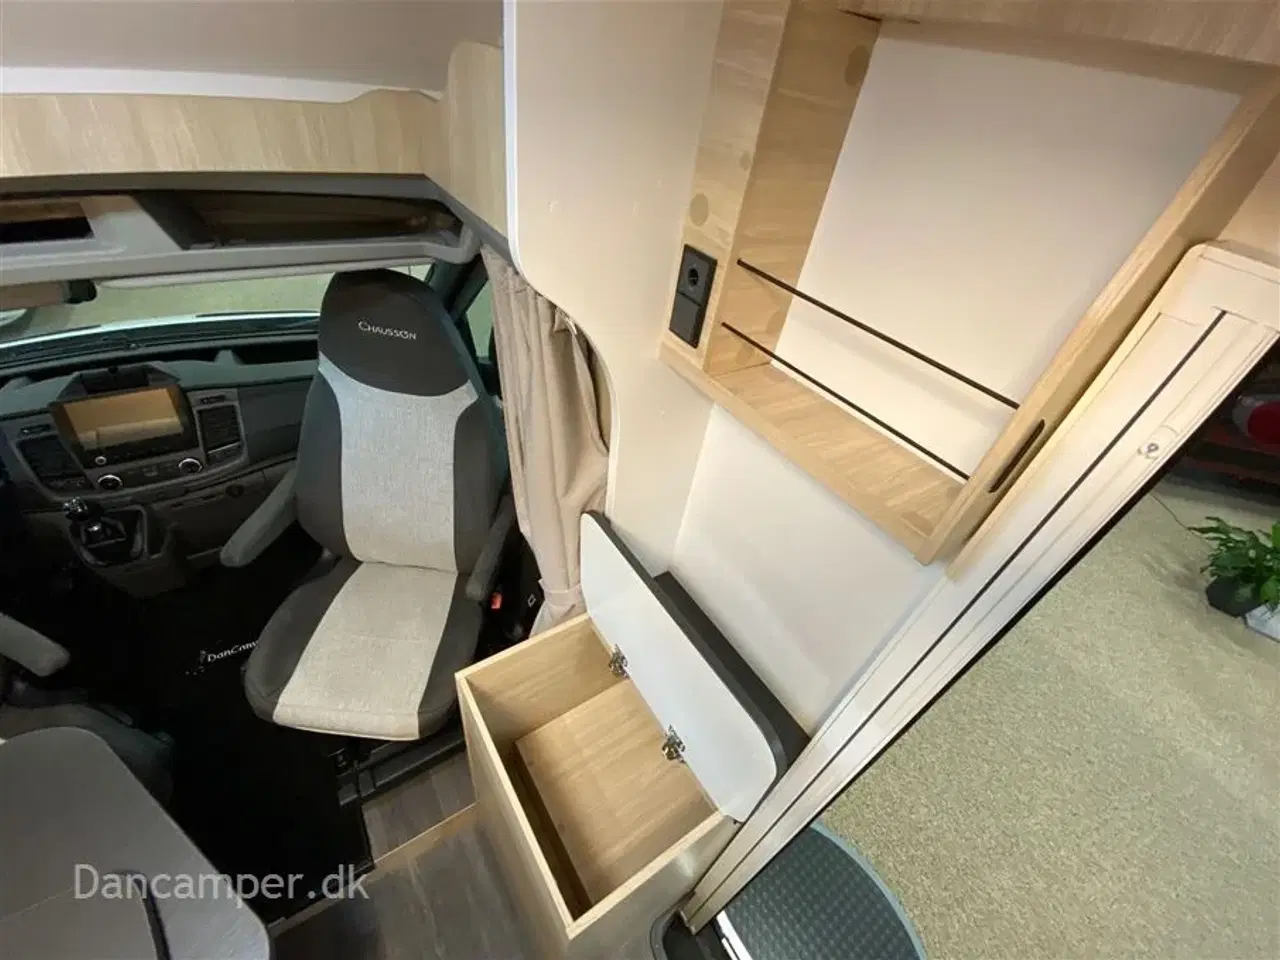 Billede 13 - 2022 - Chausson First Line S514   Smal model med god plads, dobbeltseng og stor fleksibel garage, el trin v/bodelsdør og undervognsbehandlet.